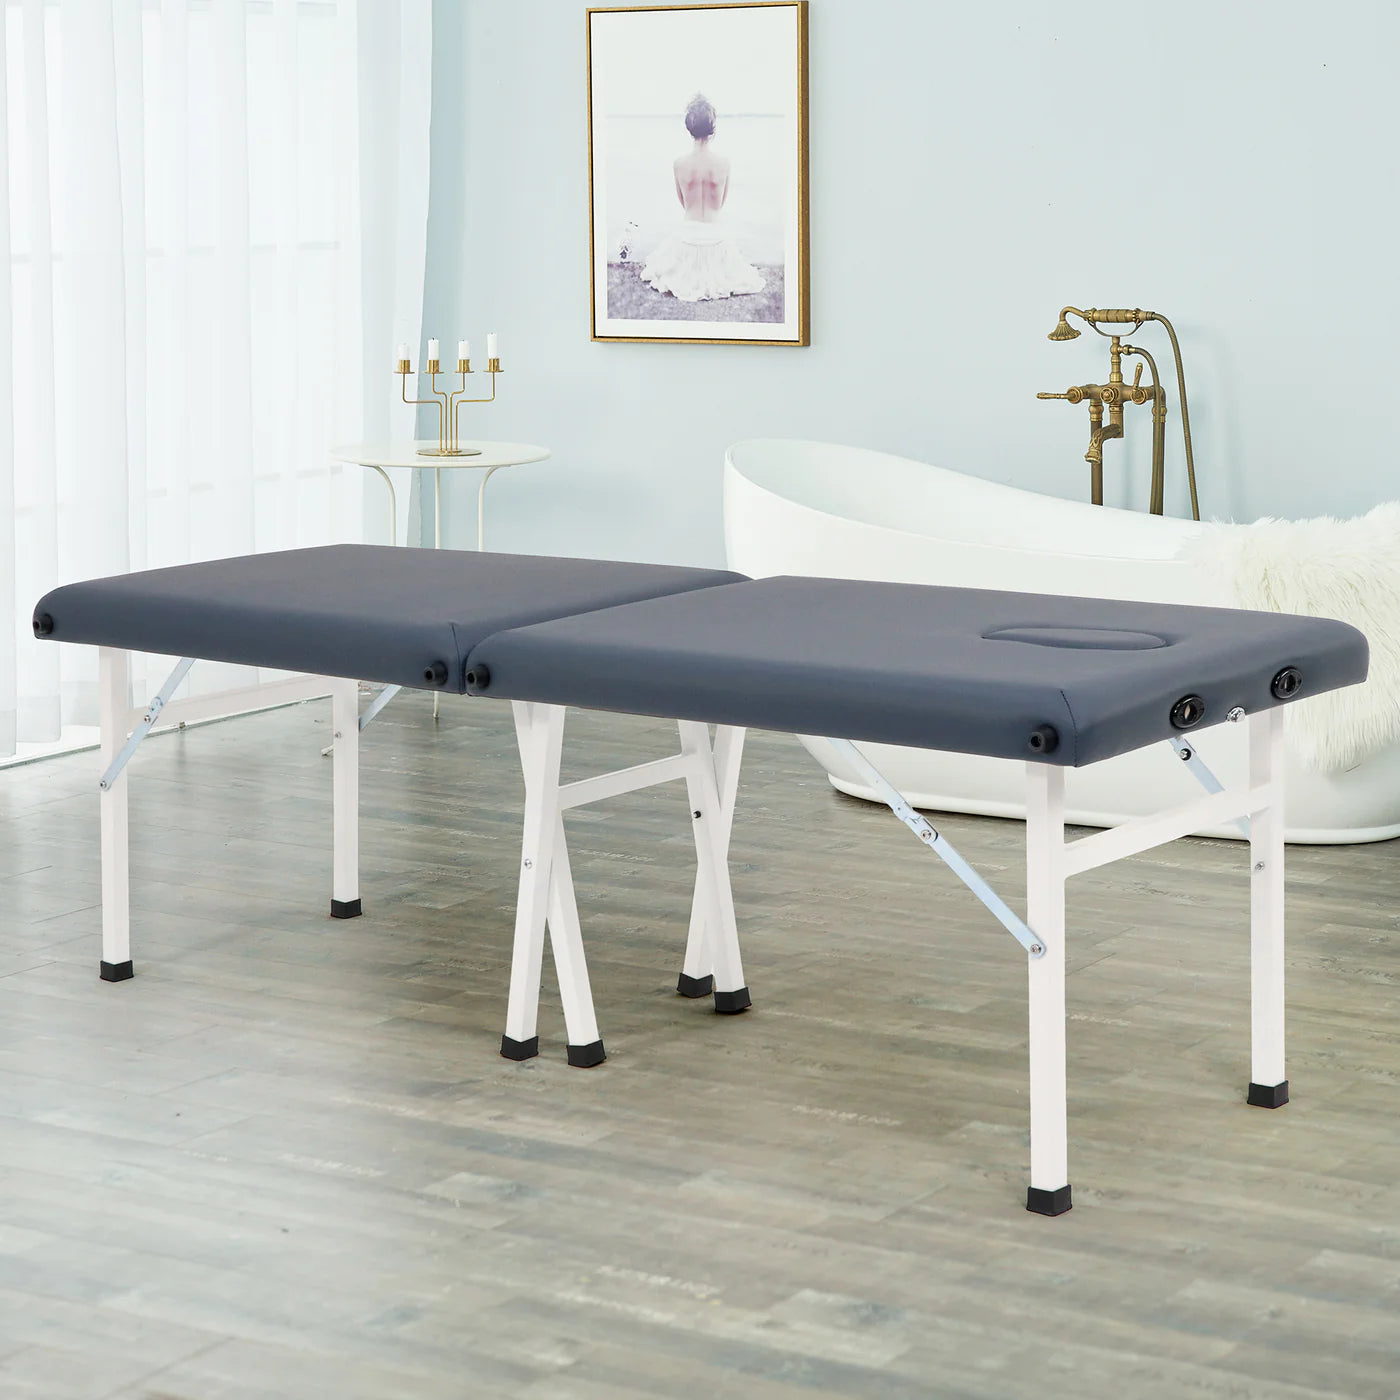 SPABODEGA 25" Harmon Economic Portable Massage Table, Royal Blue